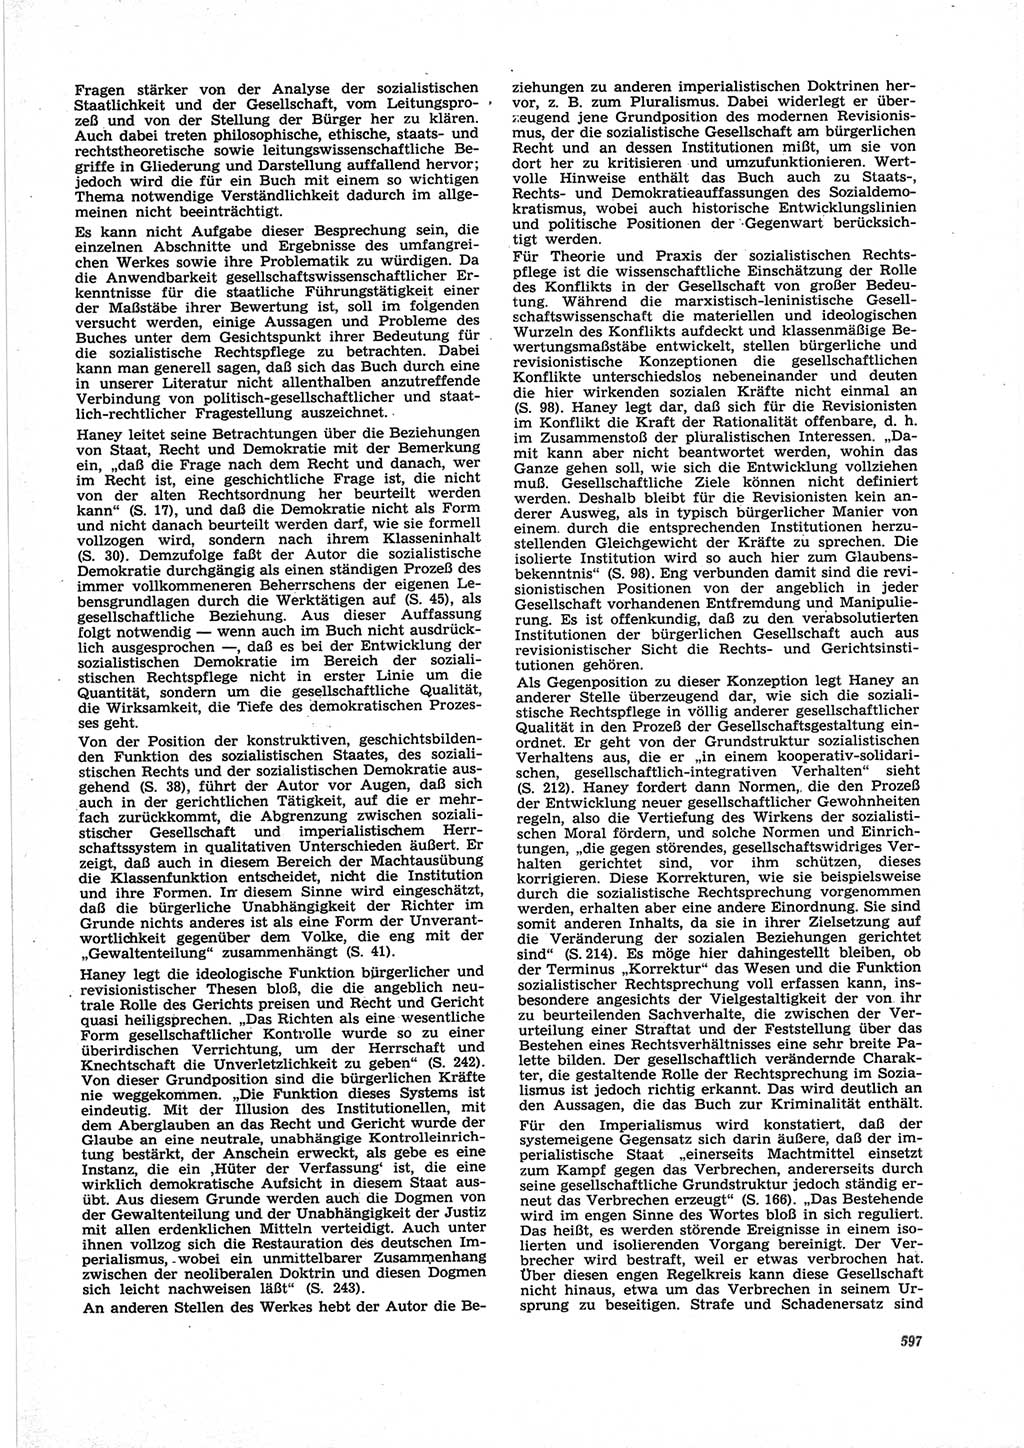 Neue Justiz (NJ), Zeitschrift für Recht und Rechtswissenschaft [Deutsche Demokratische Republik (DDR)], 25. Jahrgang 1971, Seite 597 (NJ DDR 1971, S. 597)